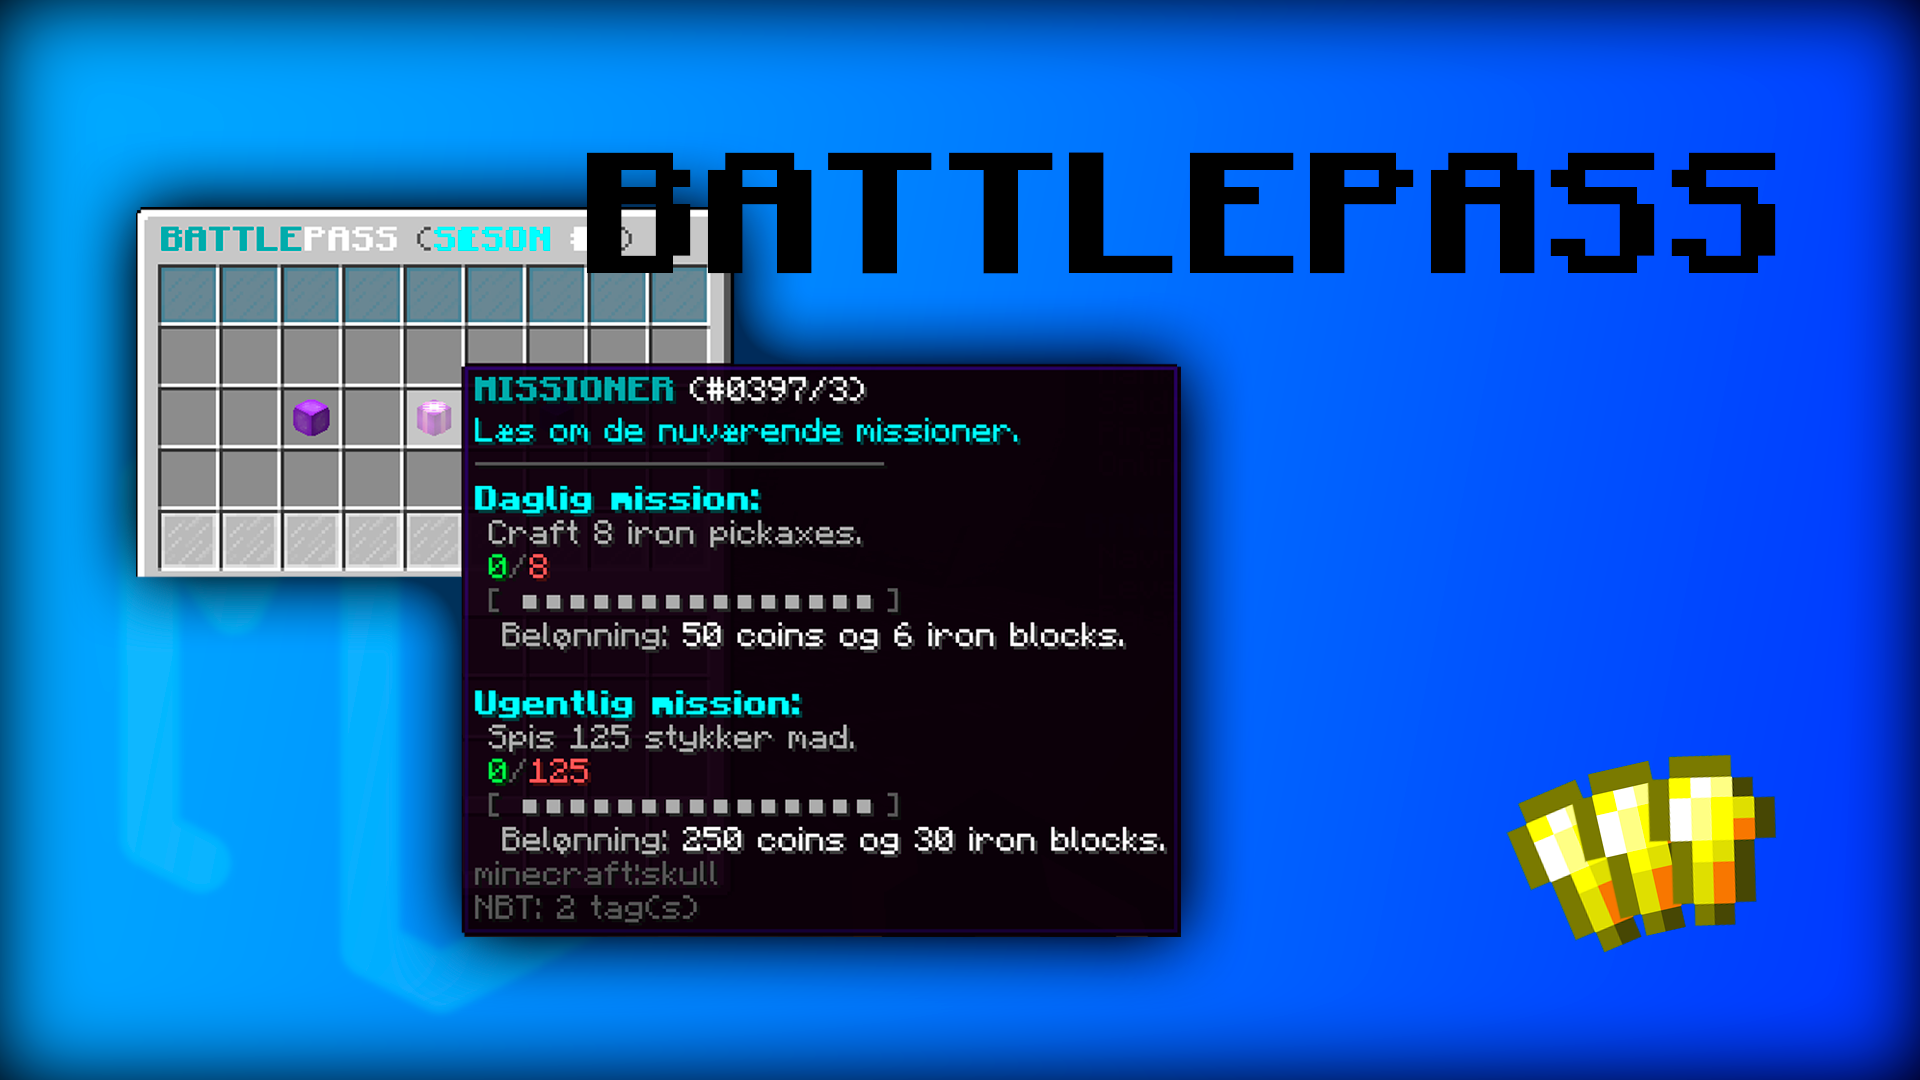 Battlepass (/bp)